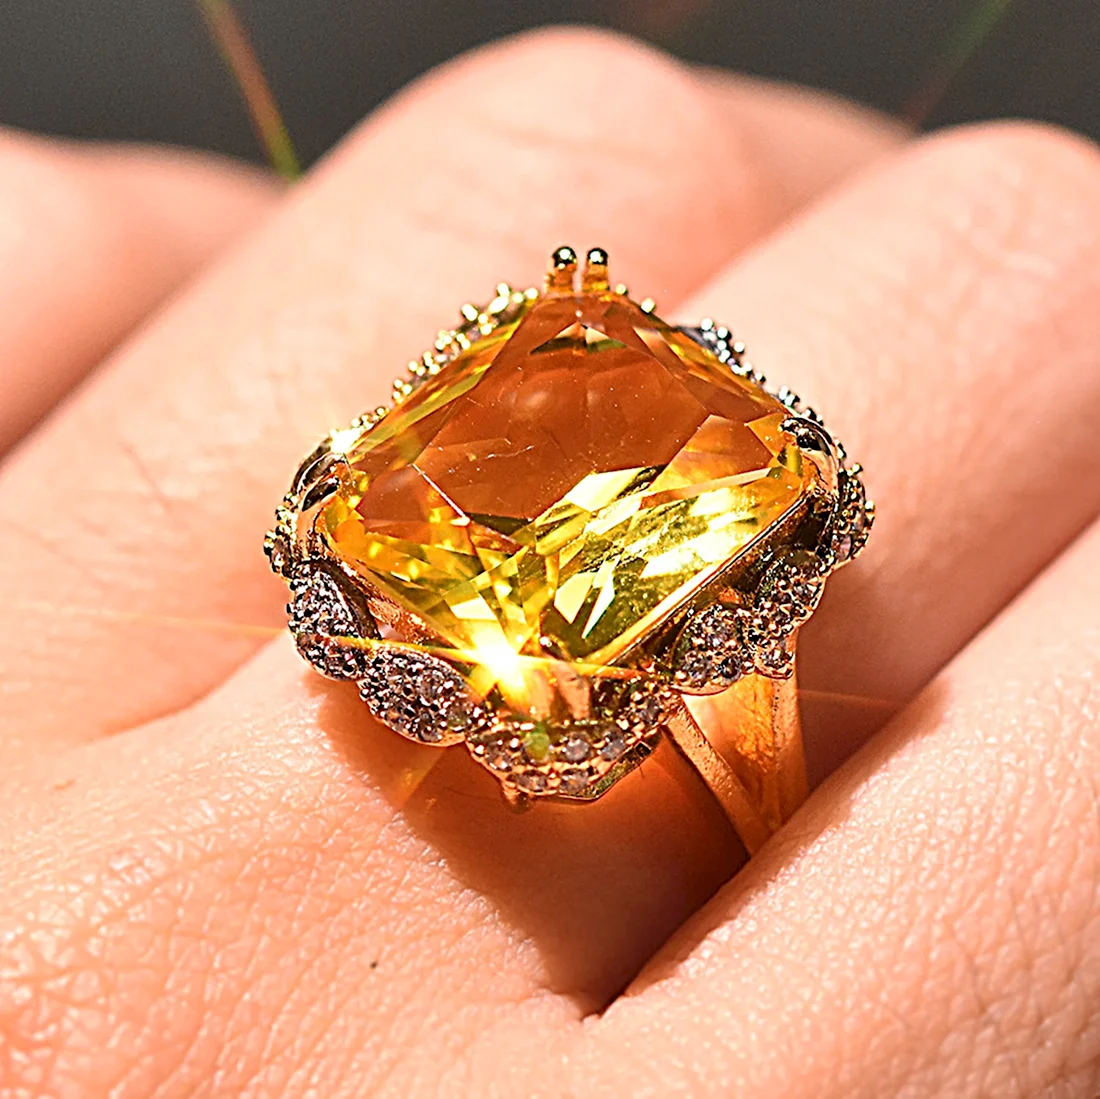 Кольцо с желтым камнем